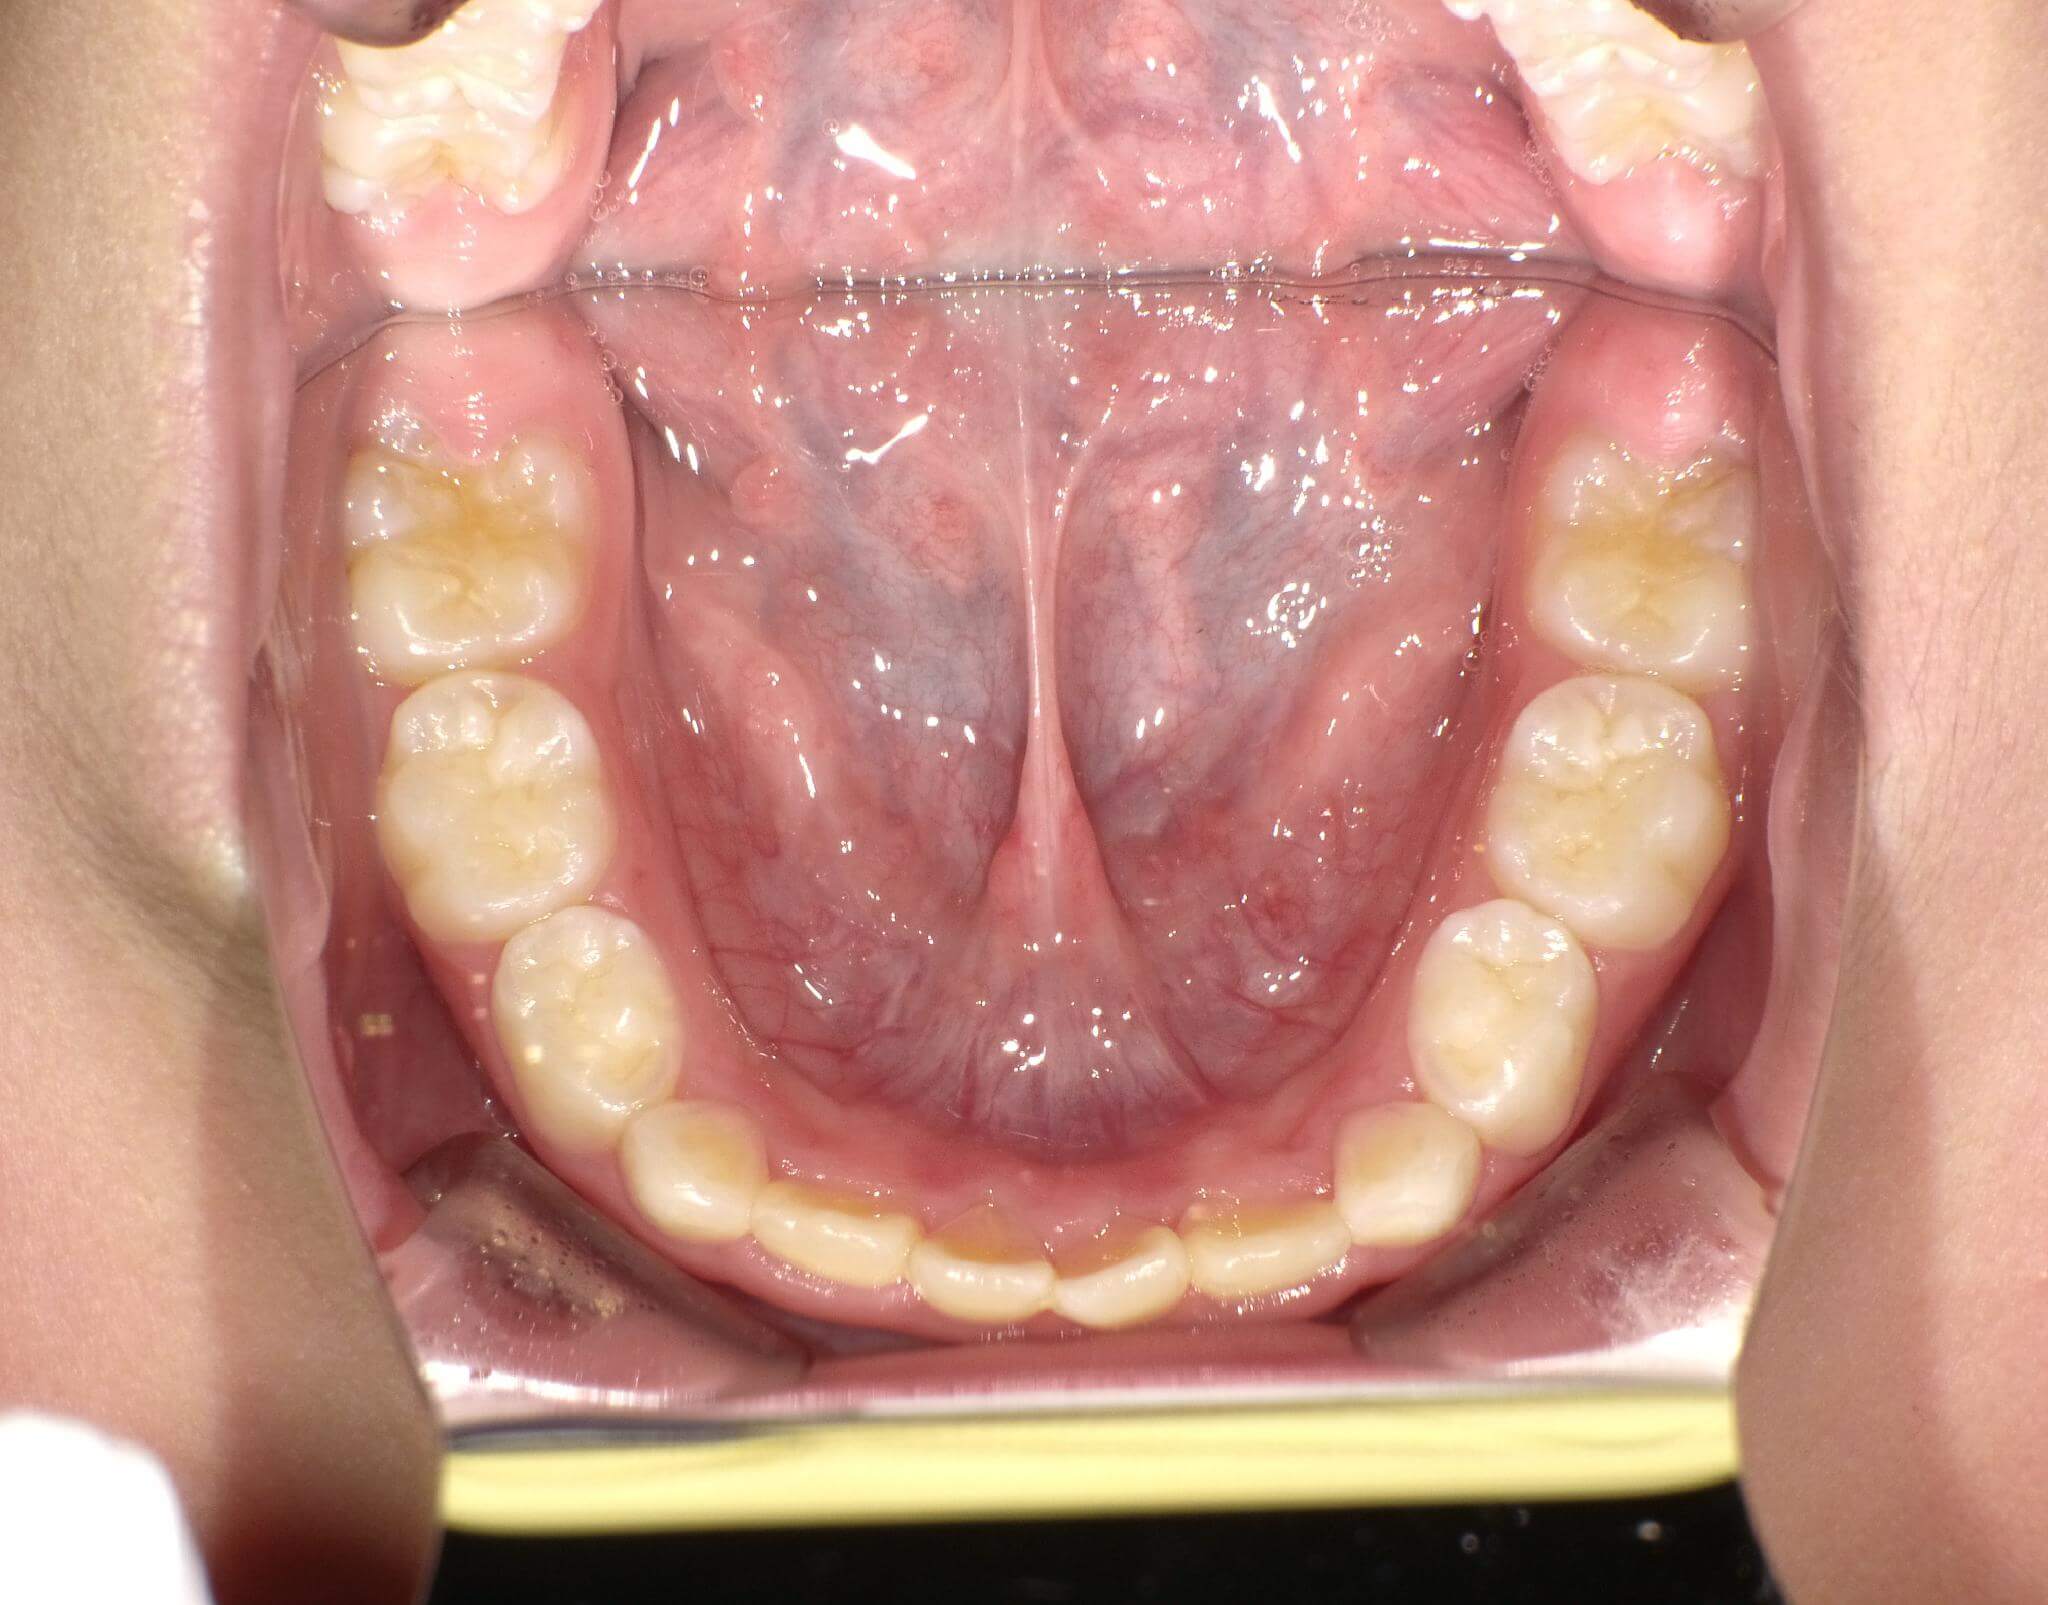 初診時に比べて下の顎が大きくなったことにより少し重なっていますが歯が生えるスペースができました。